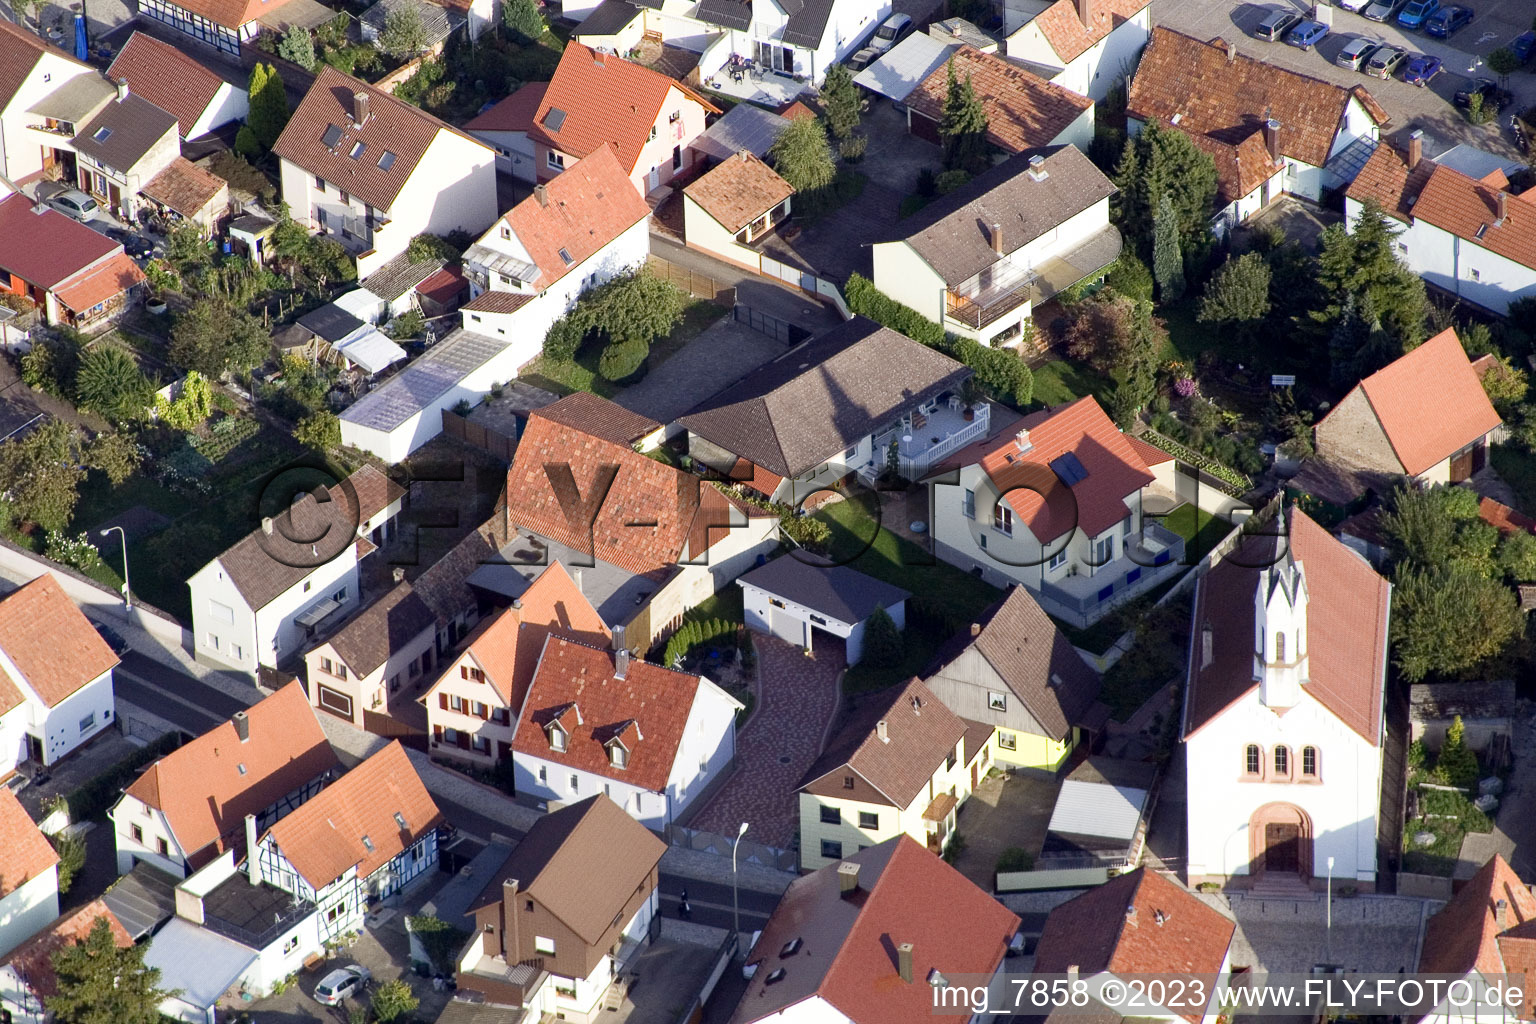 Ortsteil Maximiliansau in Wörth am Rhein im Bundesland Rheinland-Pfalz, Deutschland von der Drohne aus gesehen